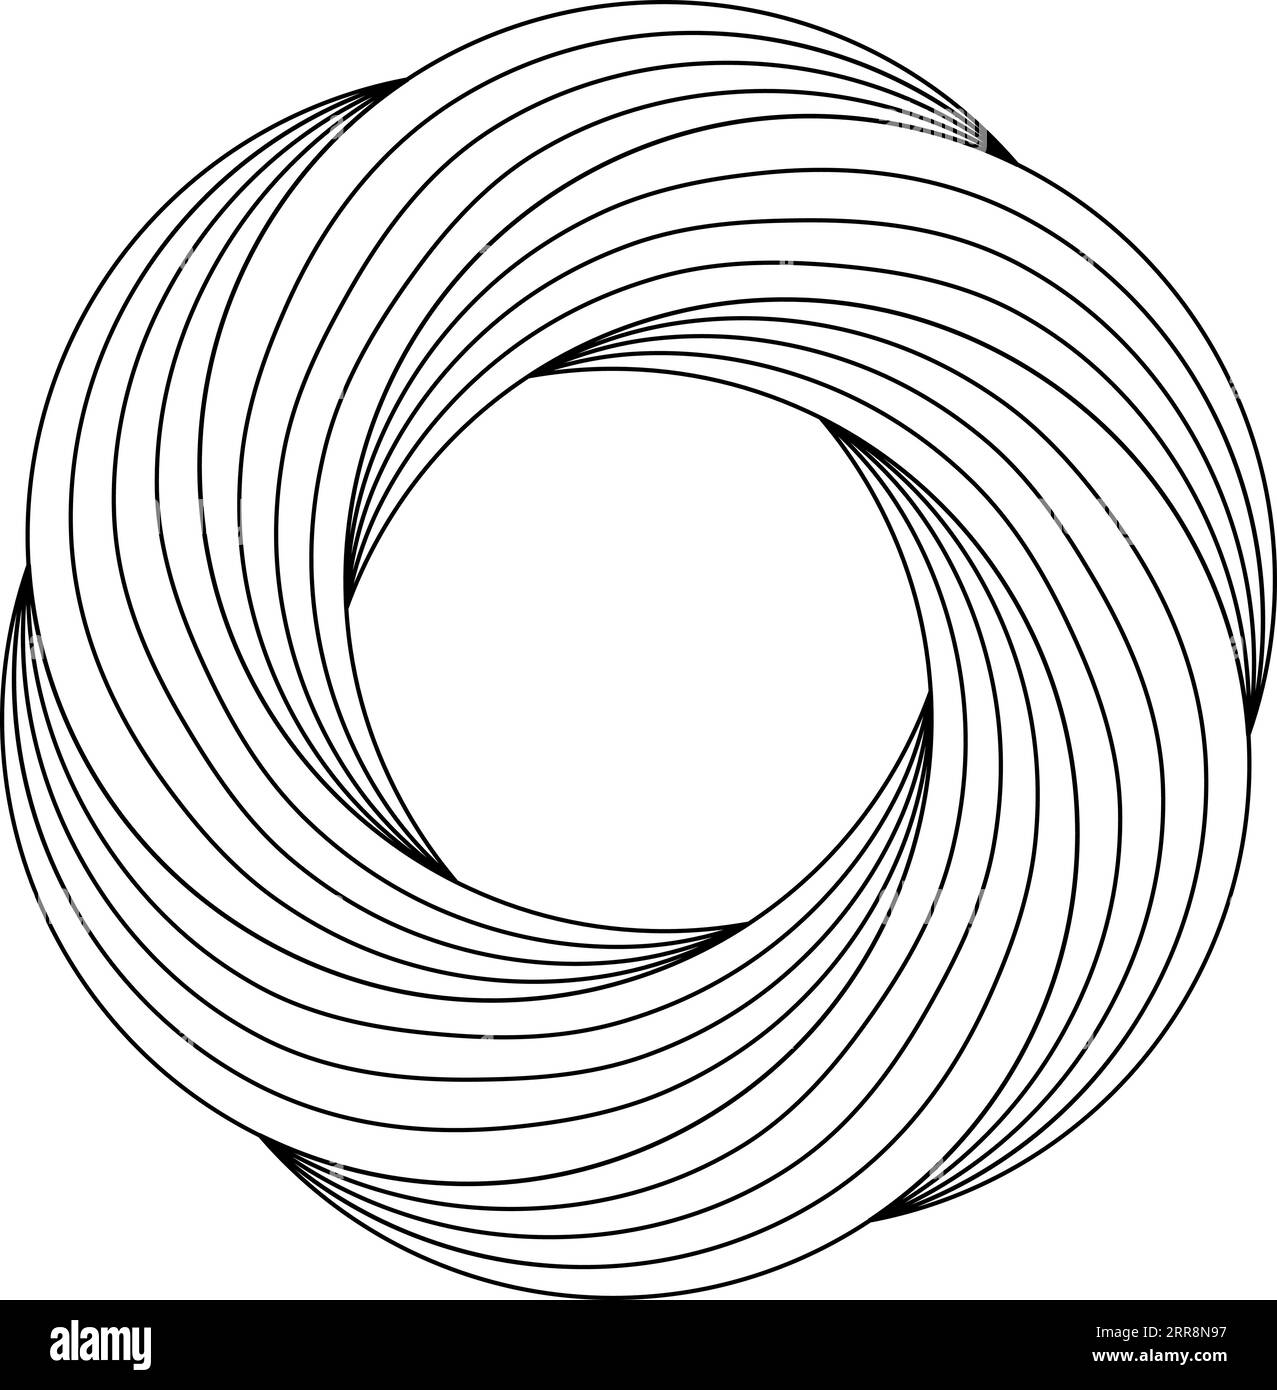 Kreisförmige Ringschablone mit wirbelnden Blumenmustern, wirbelnden, feineren Linien Stock Vektor